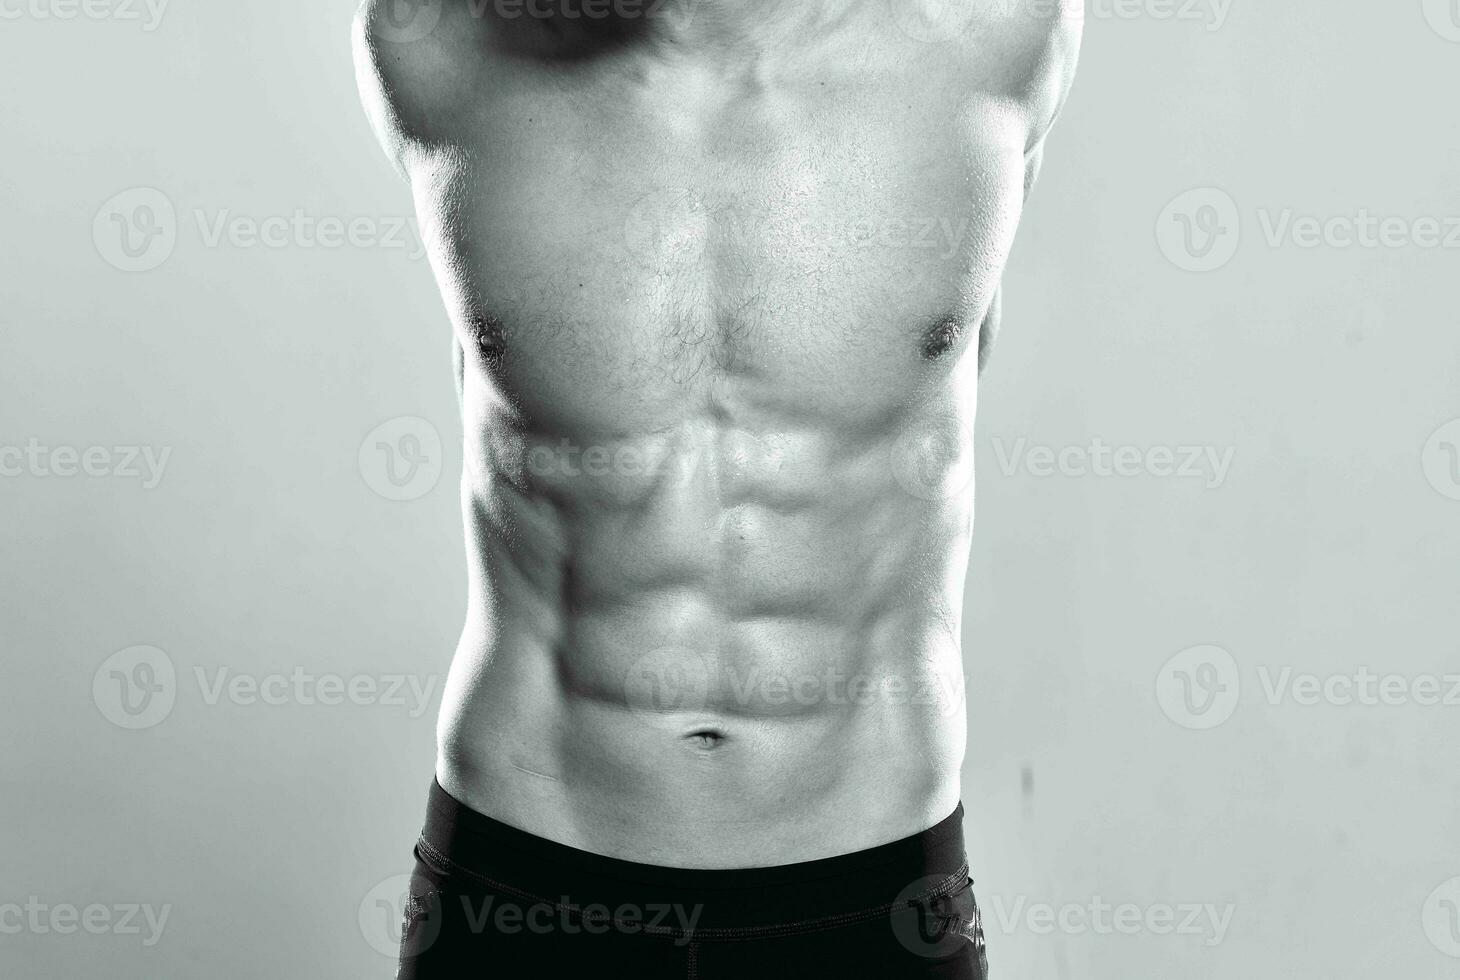 atlético hombre con muscular cuerpo fuerza ejercicio foto